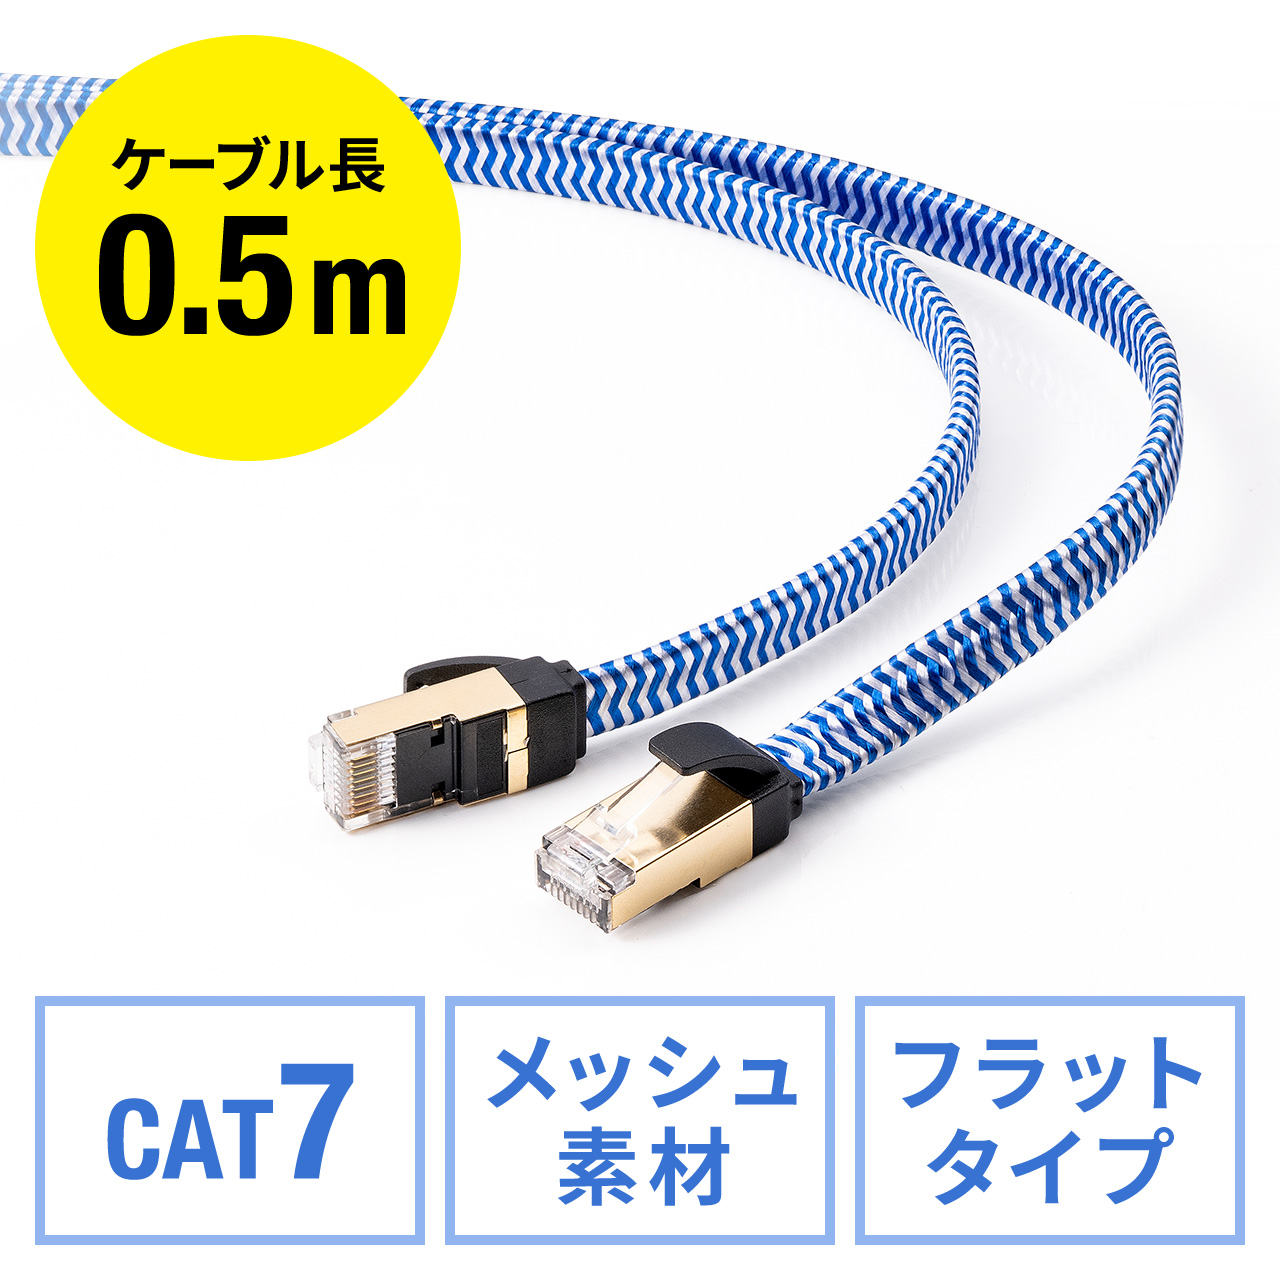 LANケーブル 10m Cat7 イーサネットケーブル フラットケーブル 高速